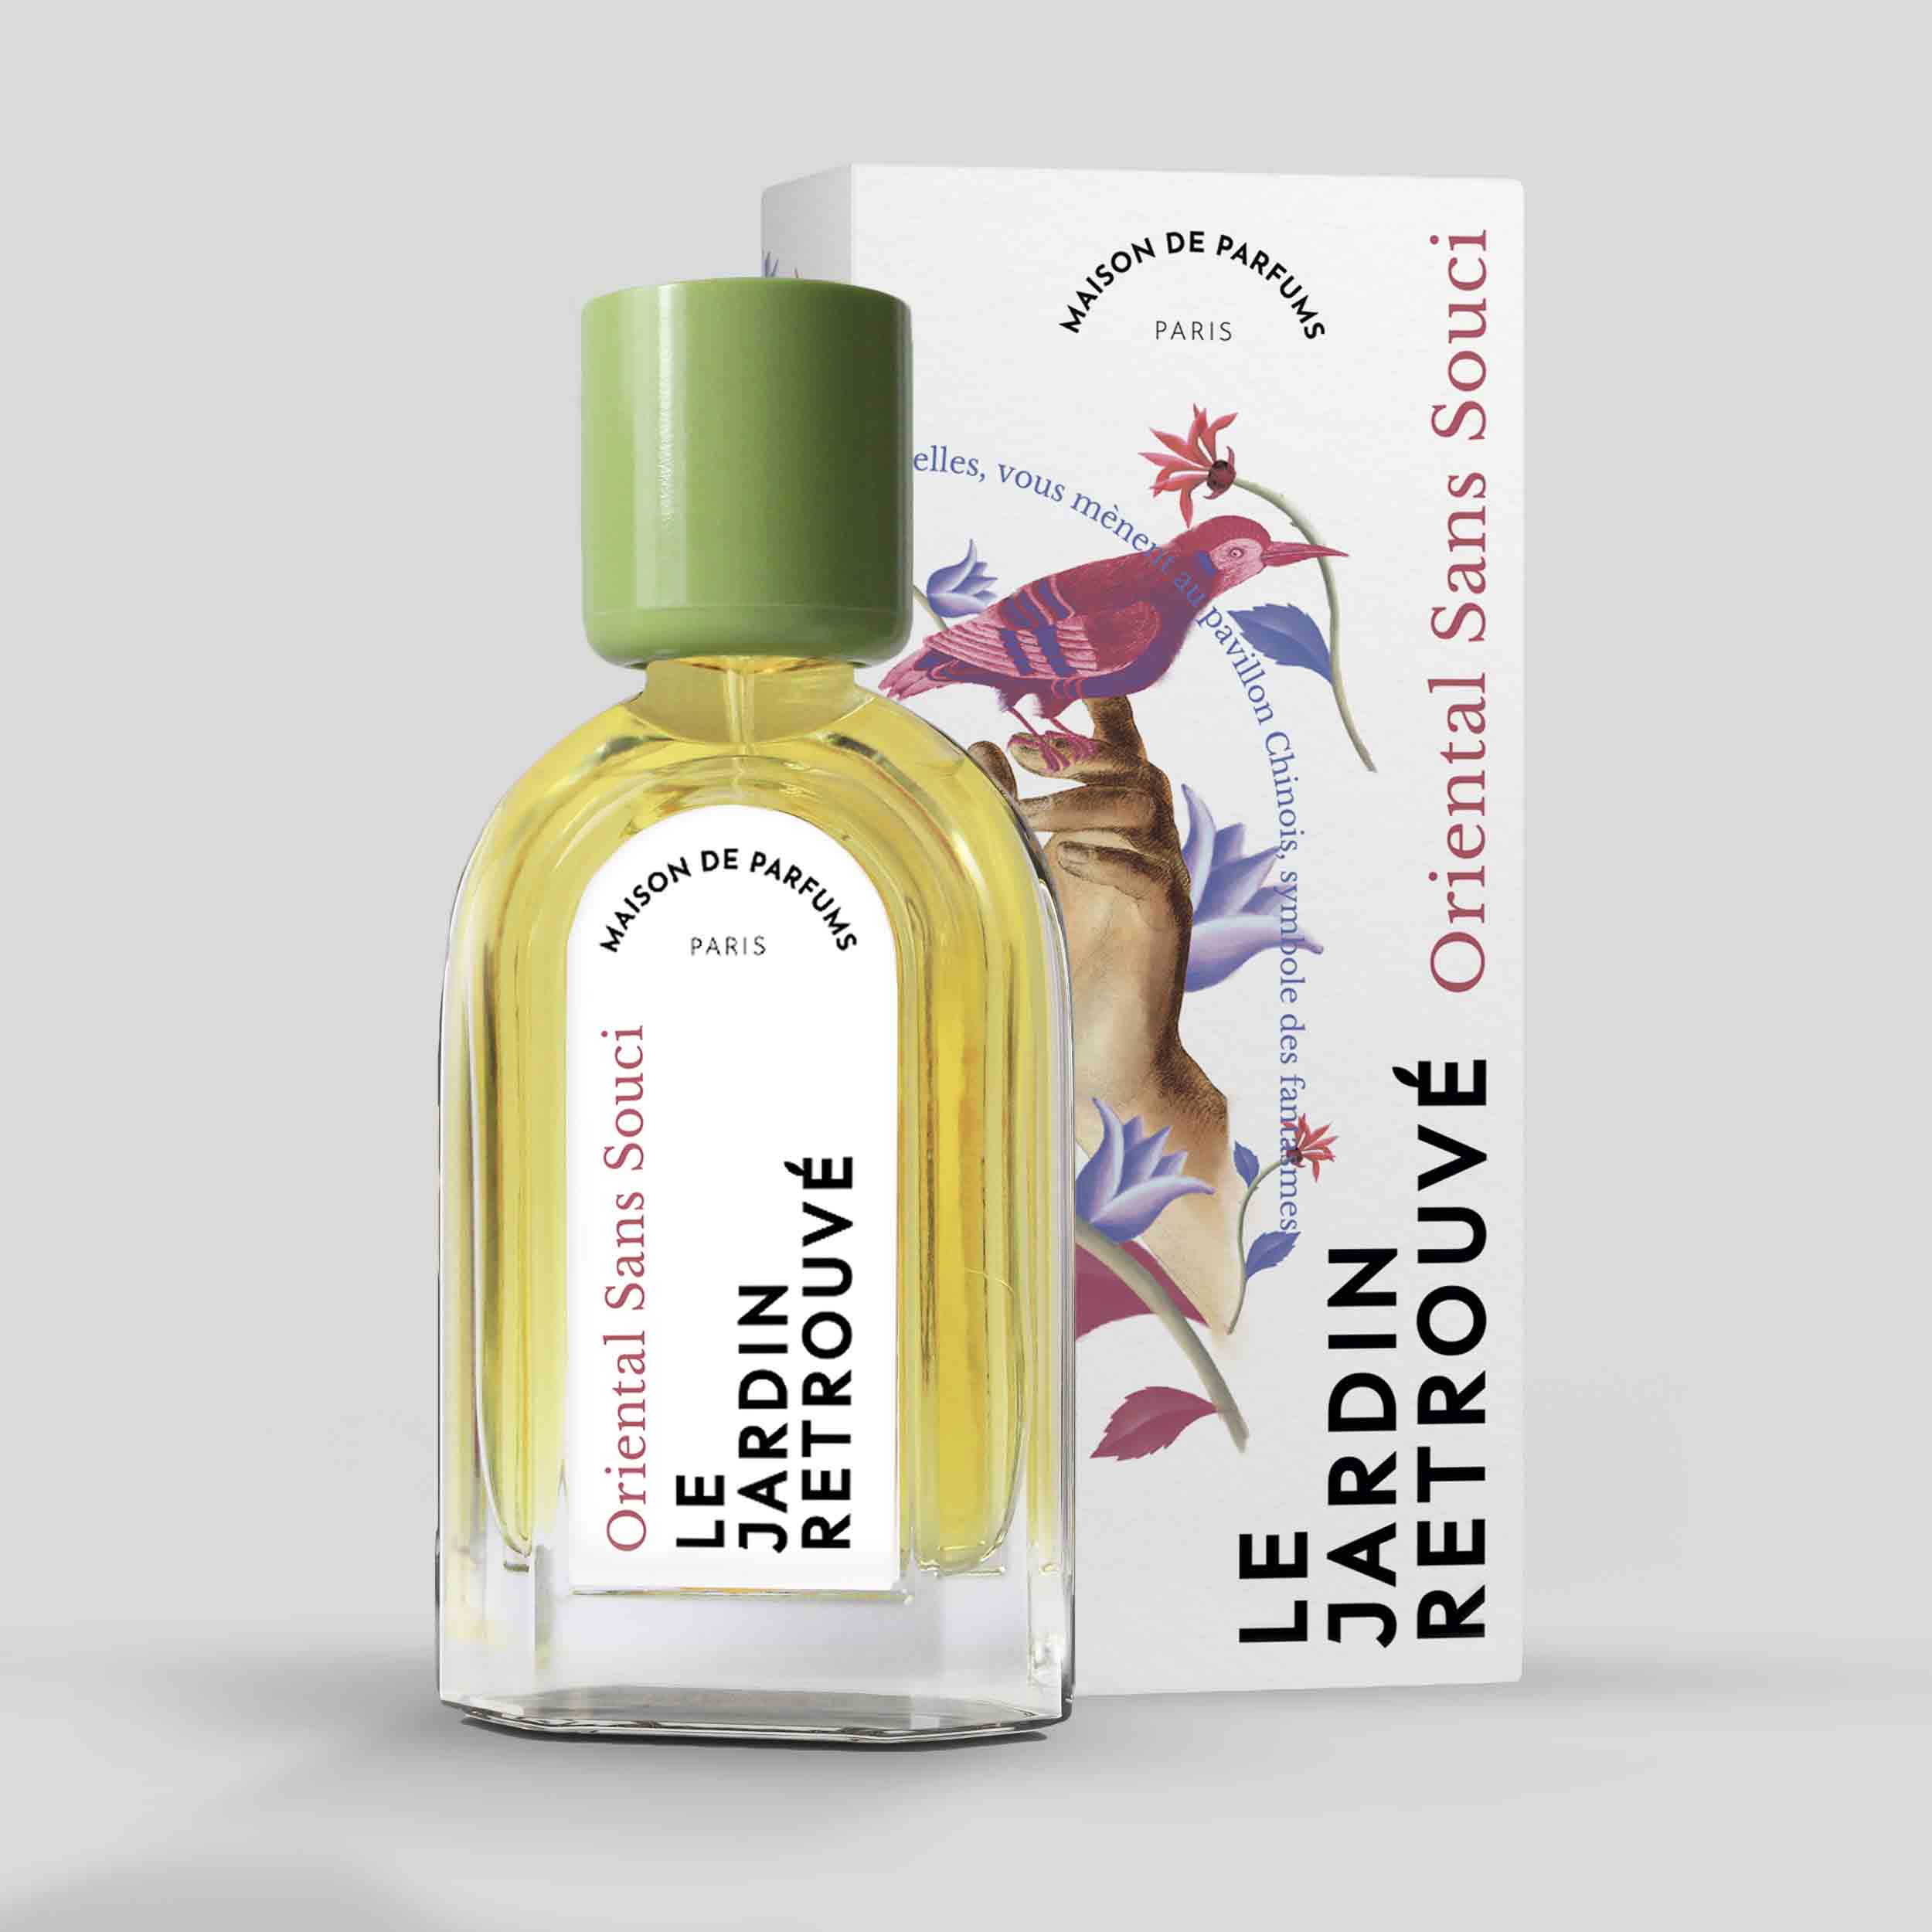 Oriental Sans Souci Eau de Parfum 50ml Bottle and Box by Le Jardin Retrouvé